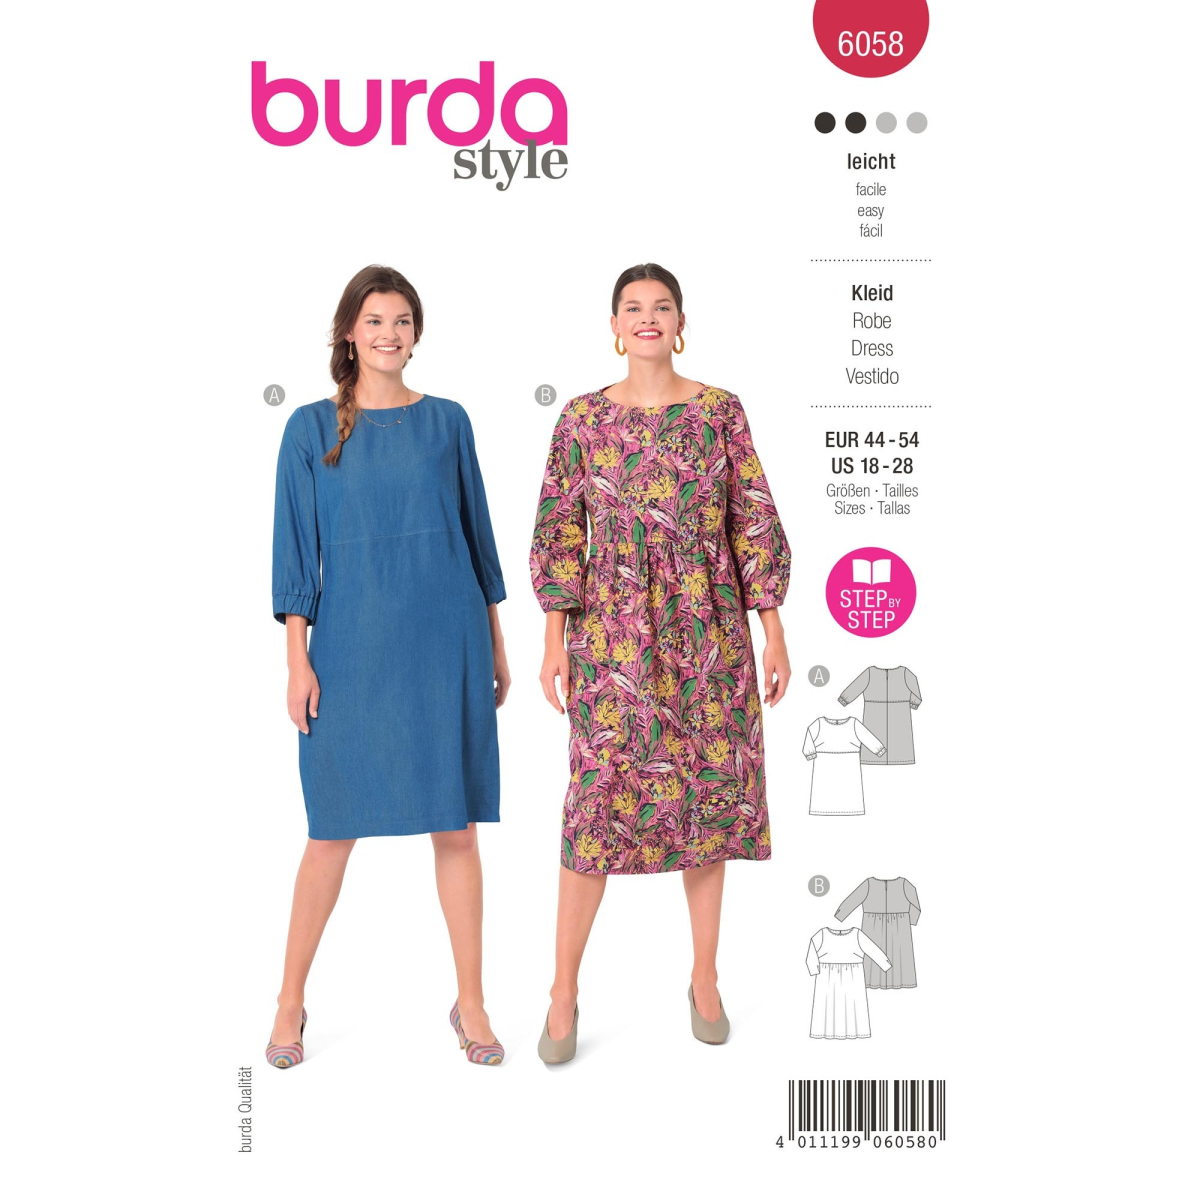 Burda 8379 sewing pattern dress sizes european 44-60 